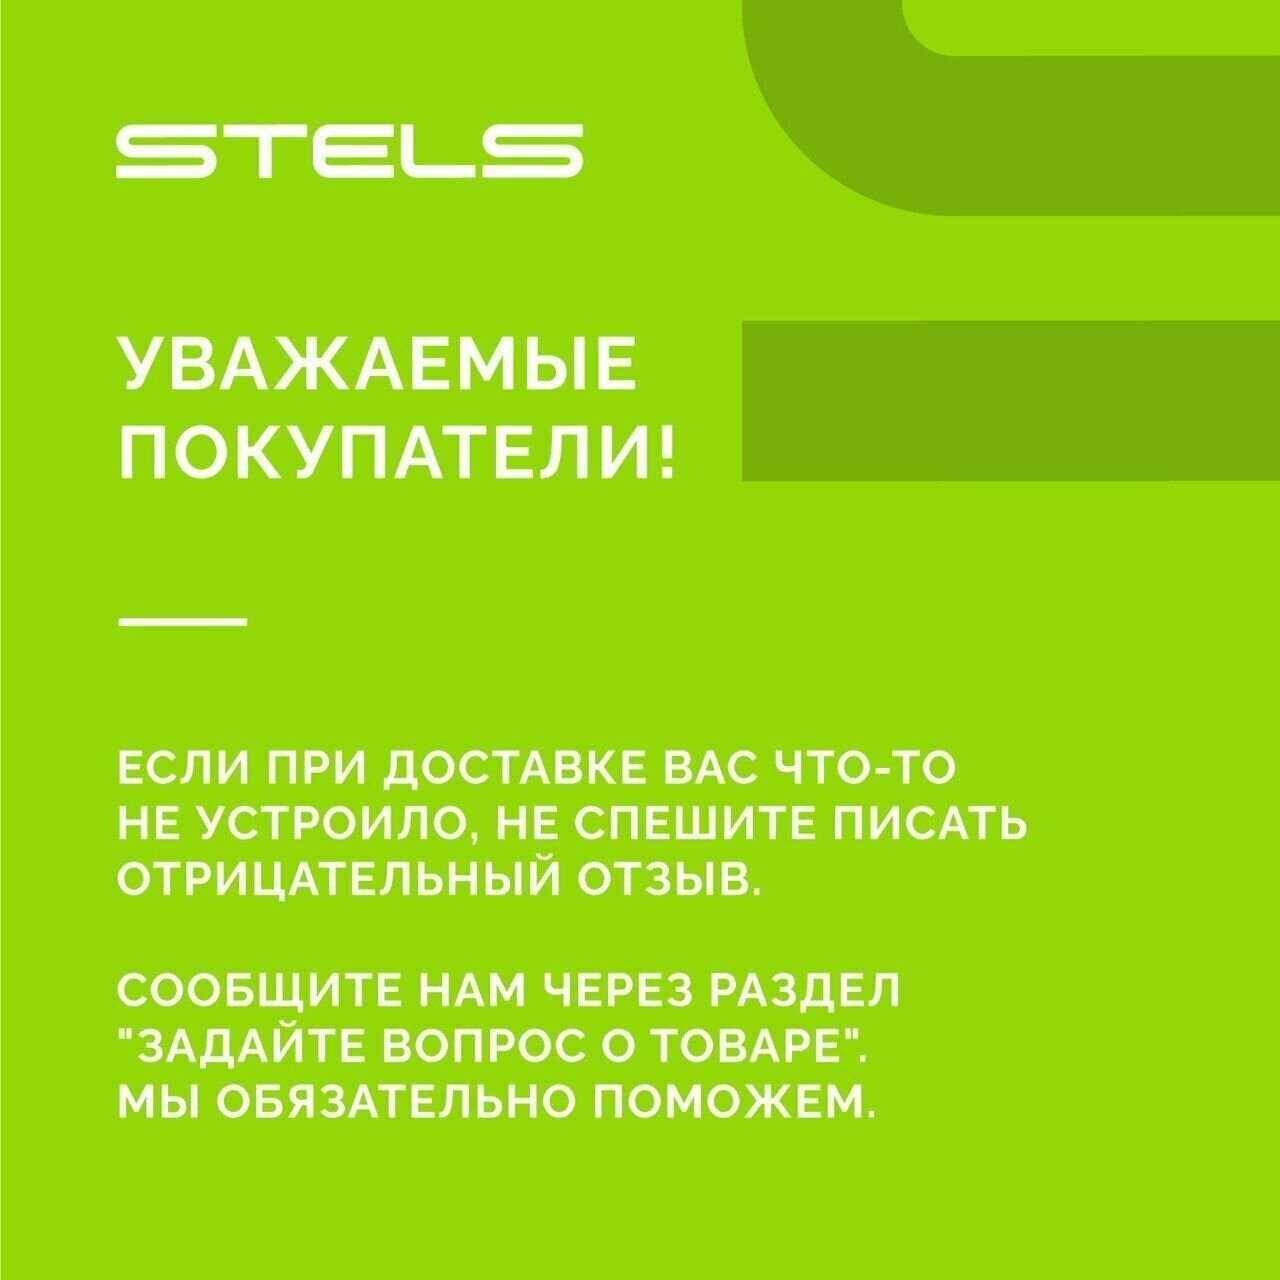 Звонок для велосипеда STELS 16A-09 алюминий/пластик, чёрно-синий